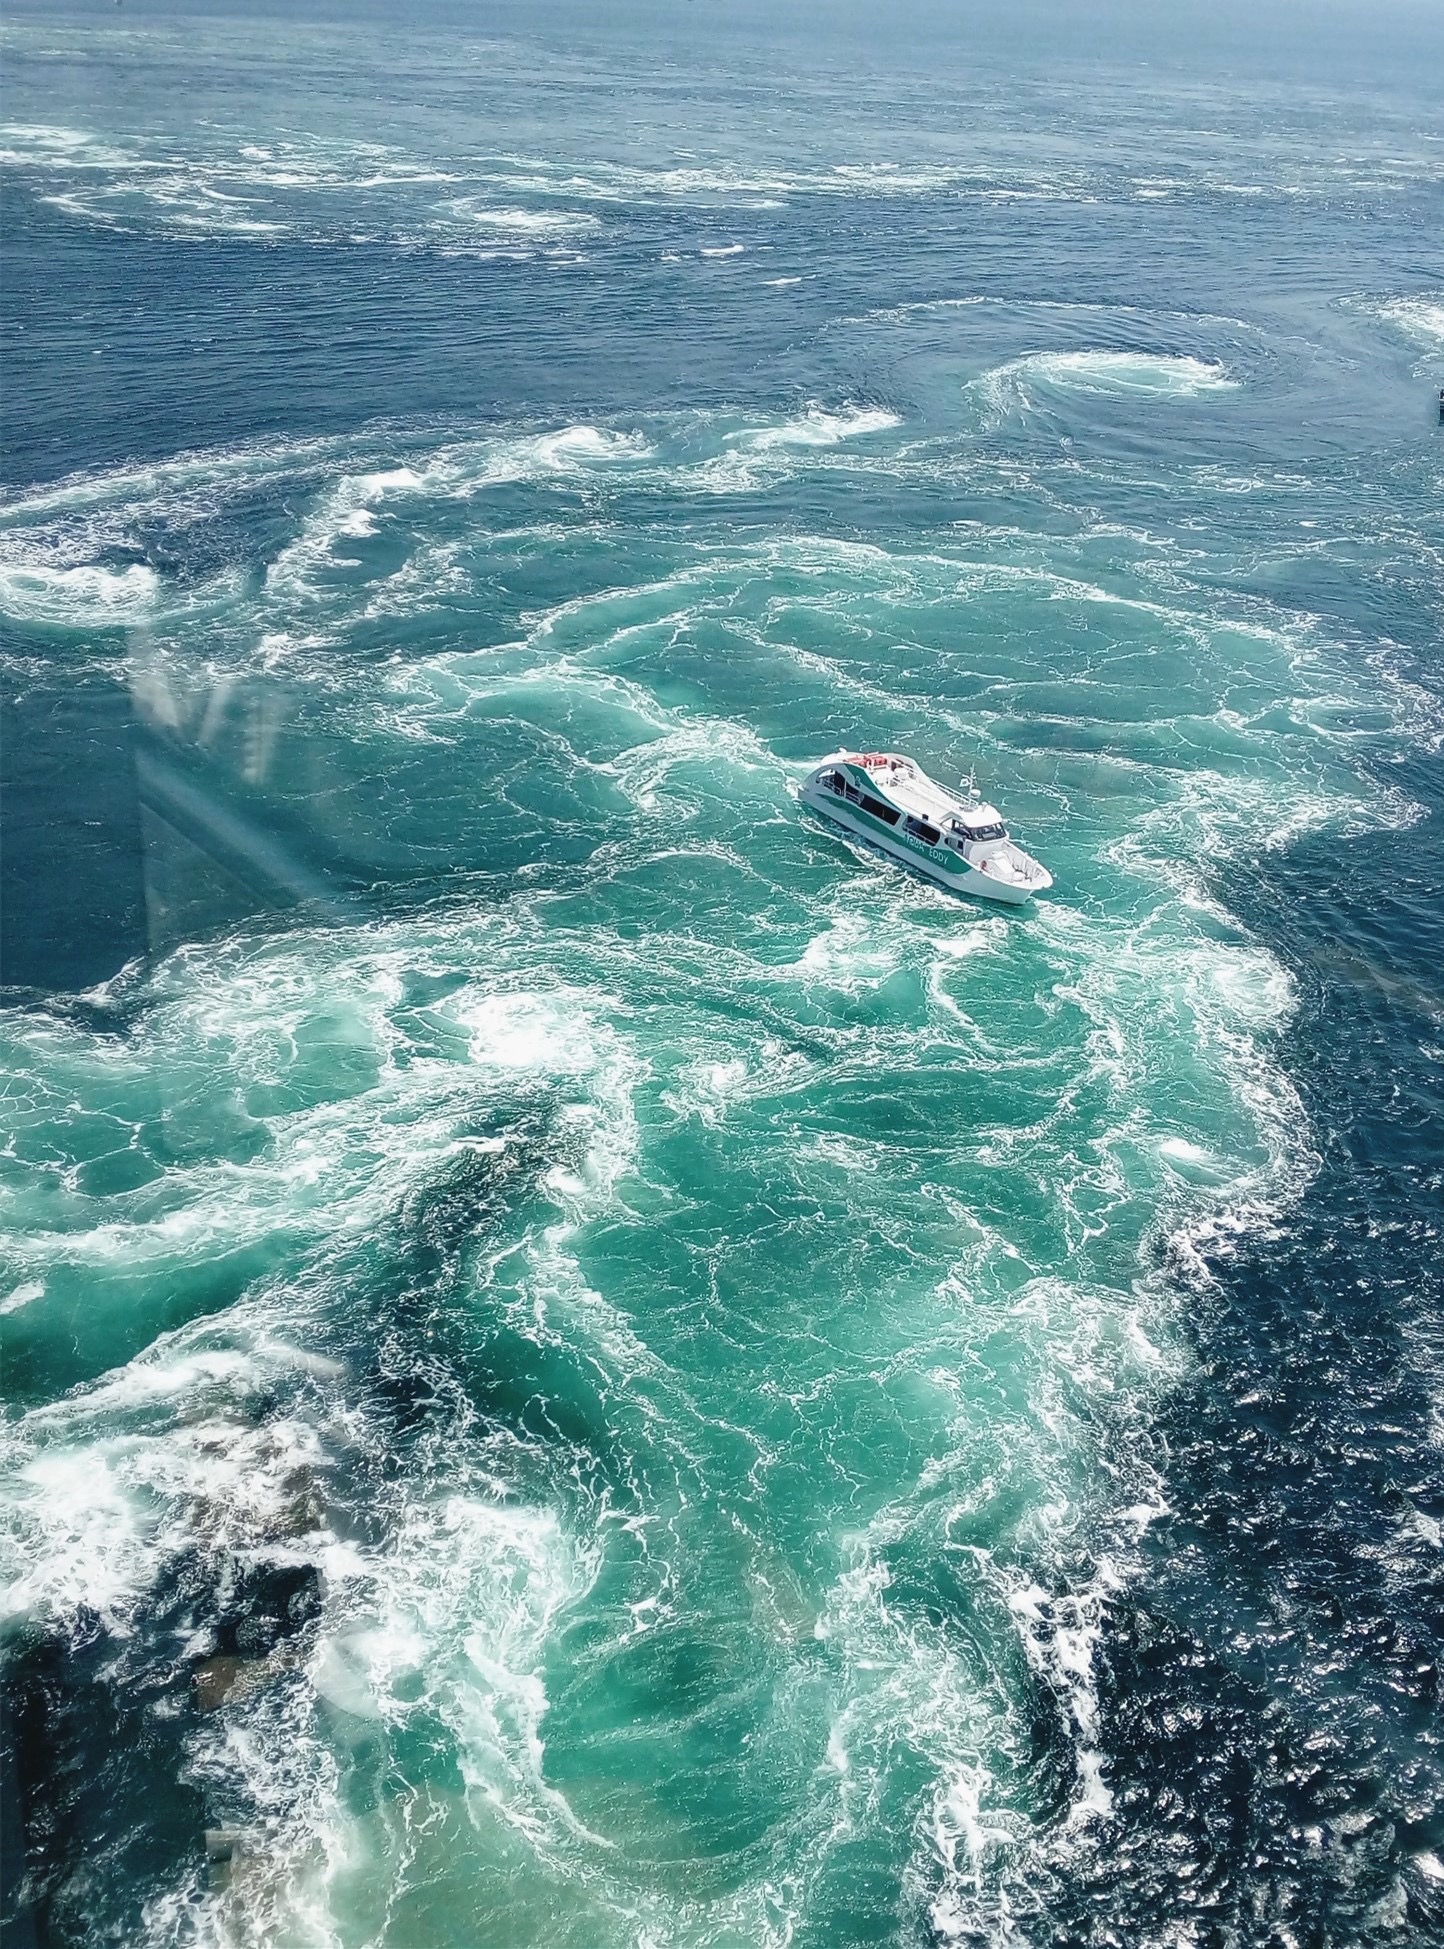 鸣门漩涡的形成：鸣门海峡作为连接日本濑户内海和太平洋的海峡之一，每日两回（潮起潮落），大量的海水从濑